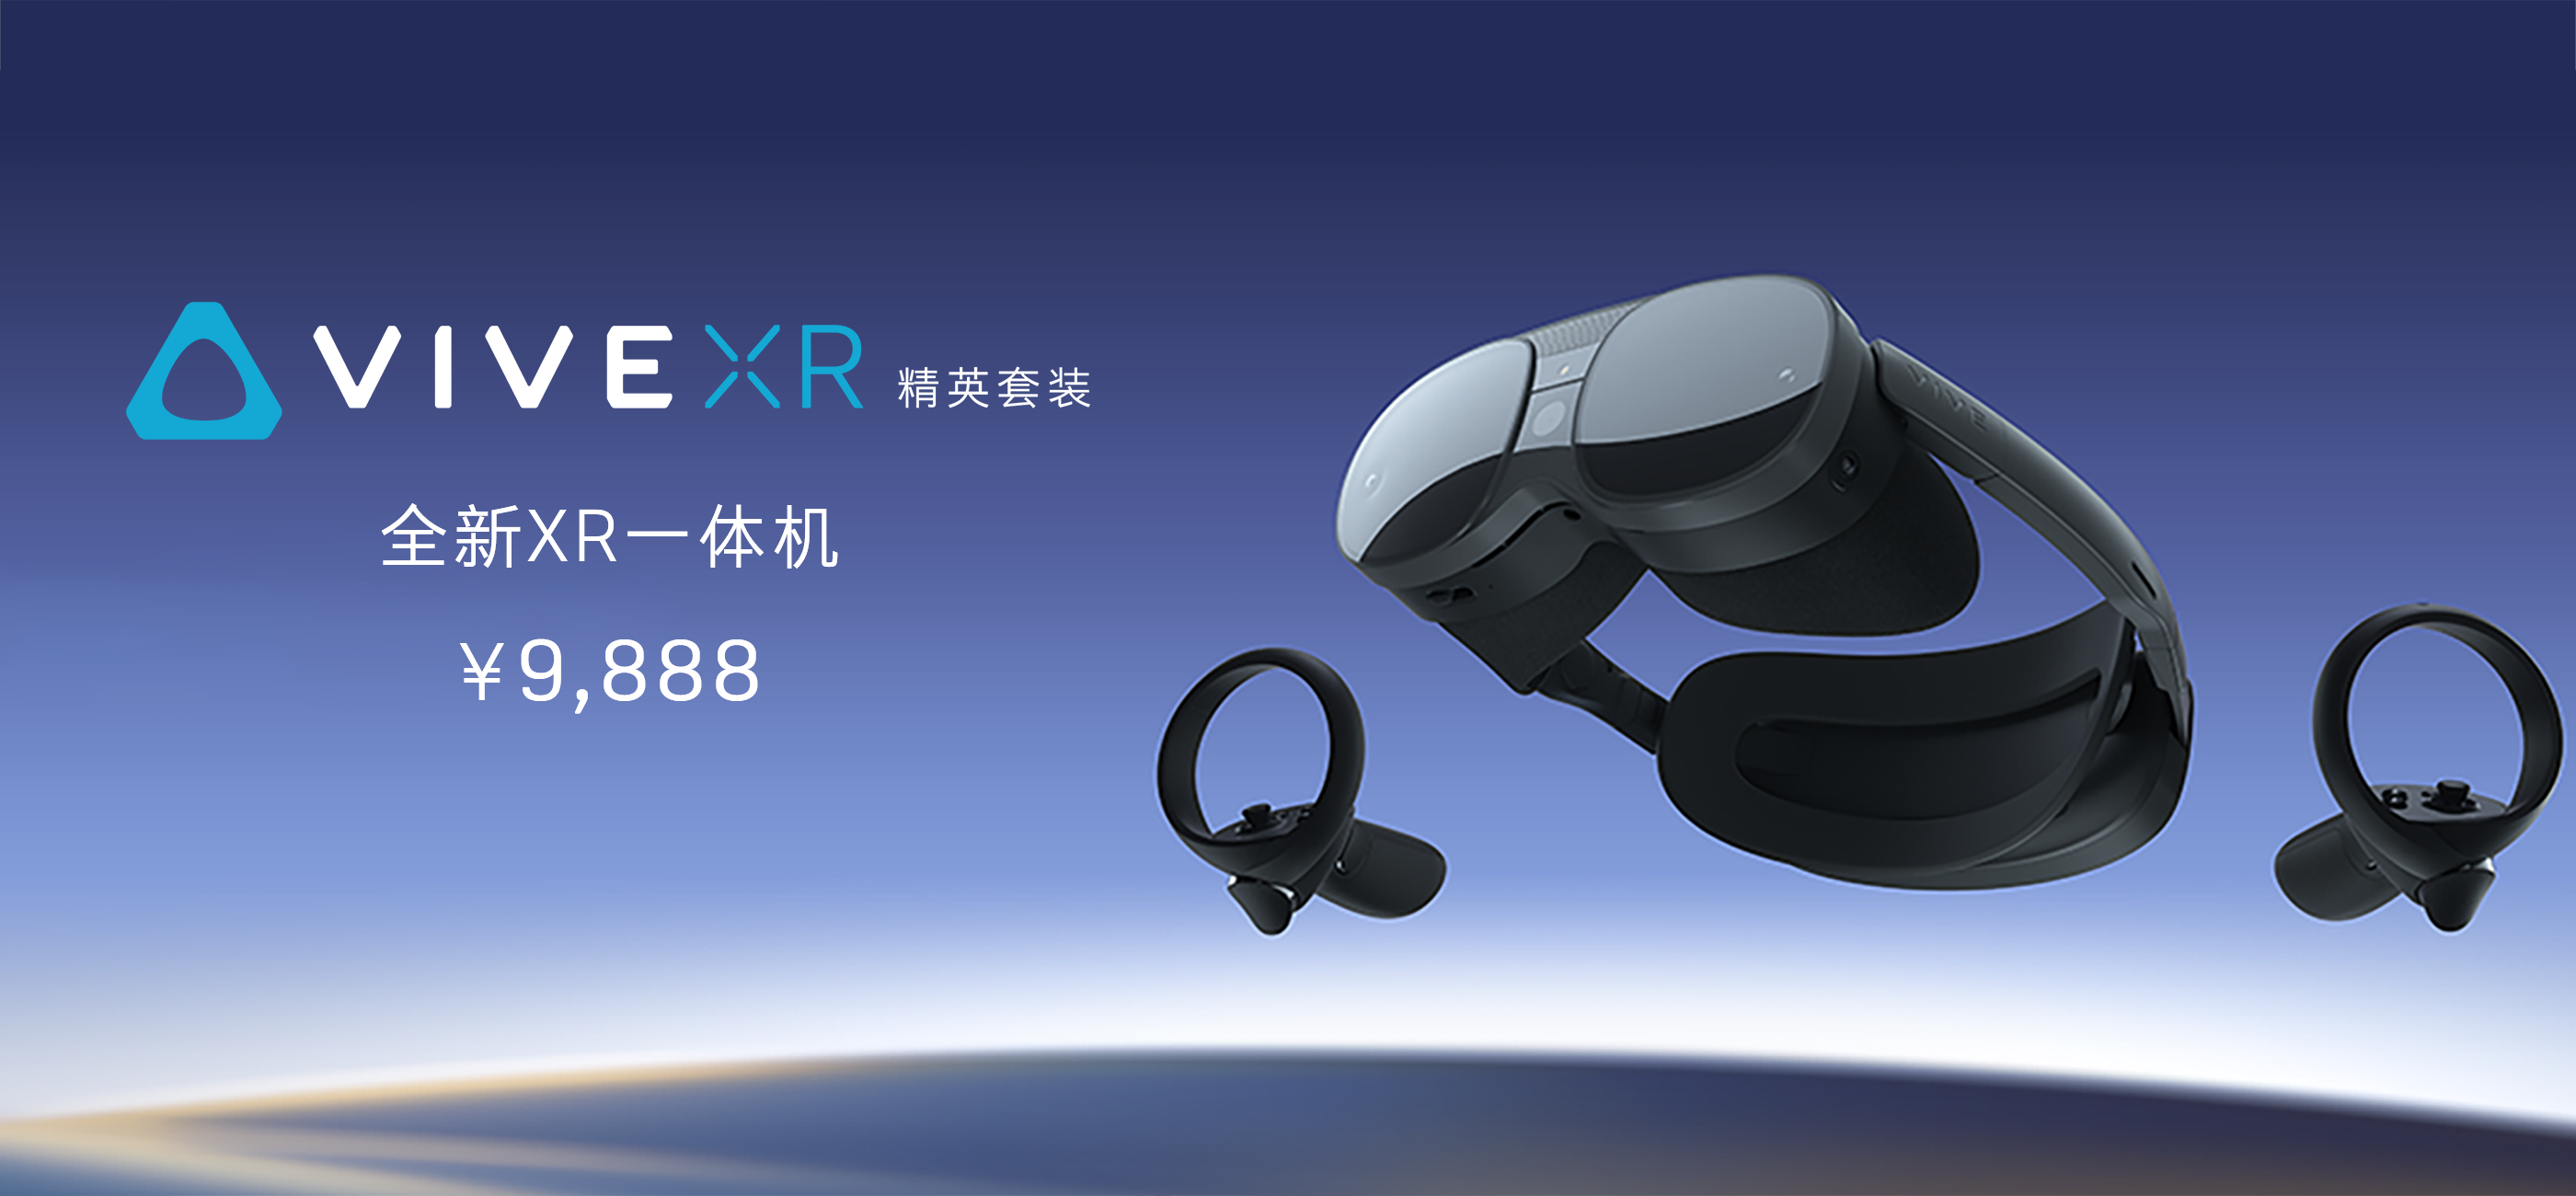 未来之上，前行不止，HTC VIVE 首次推出XR 一体机— VIVE XR 精英套装